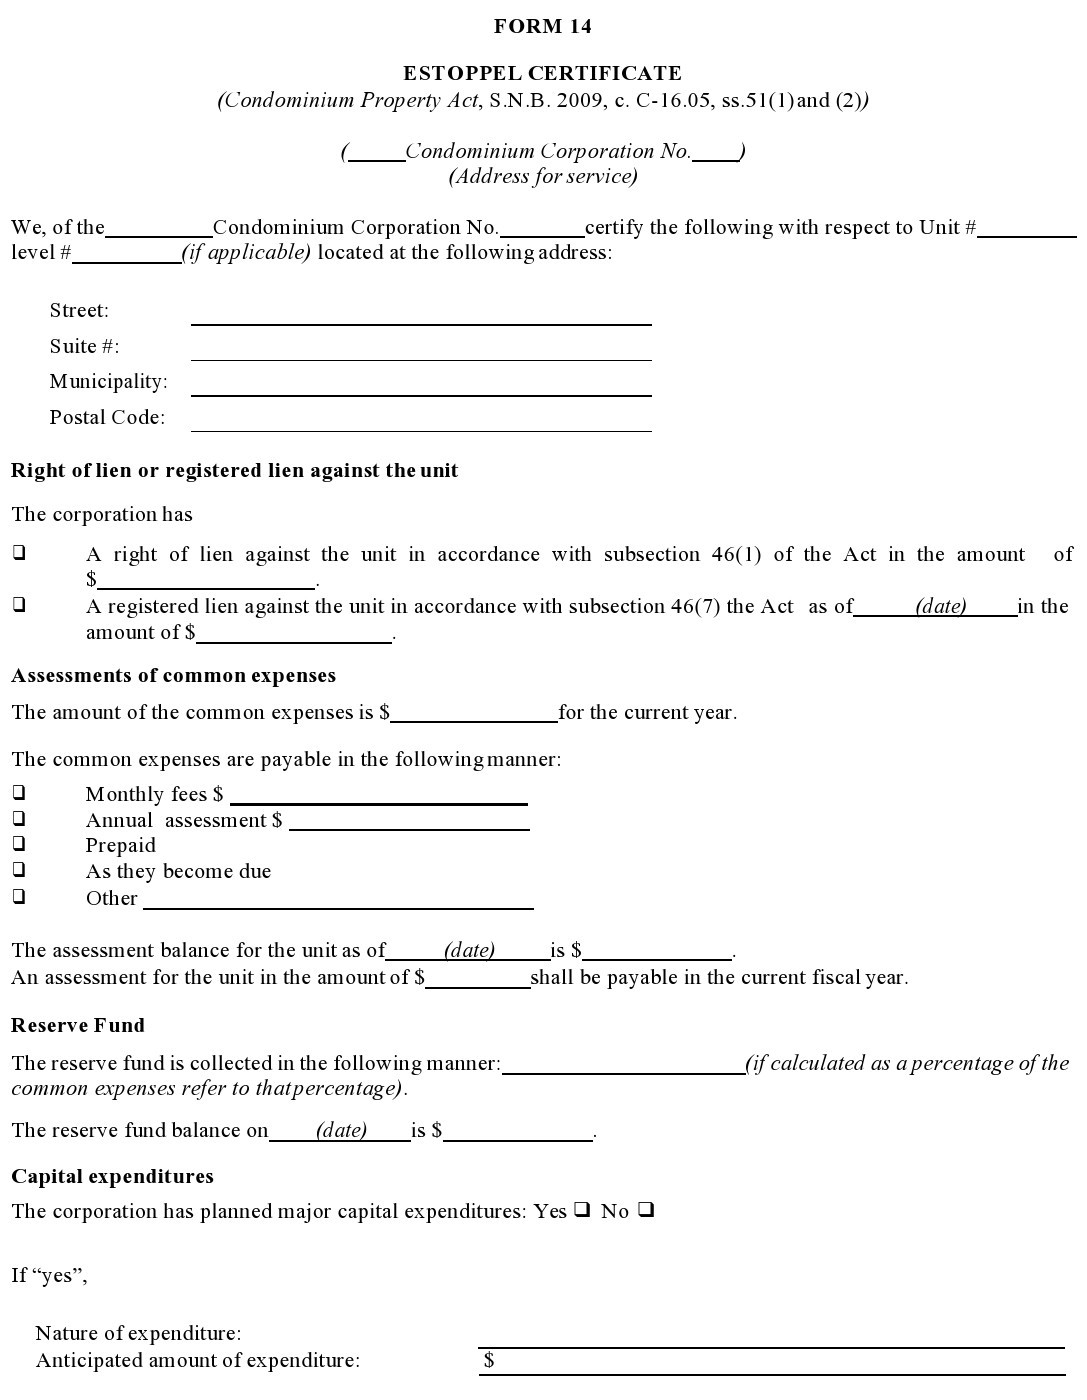 Free estoppel certificate form 22